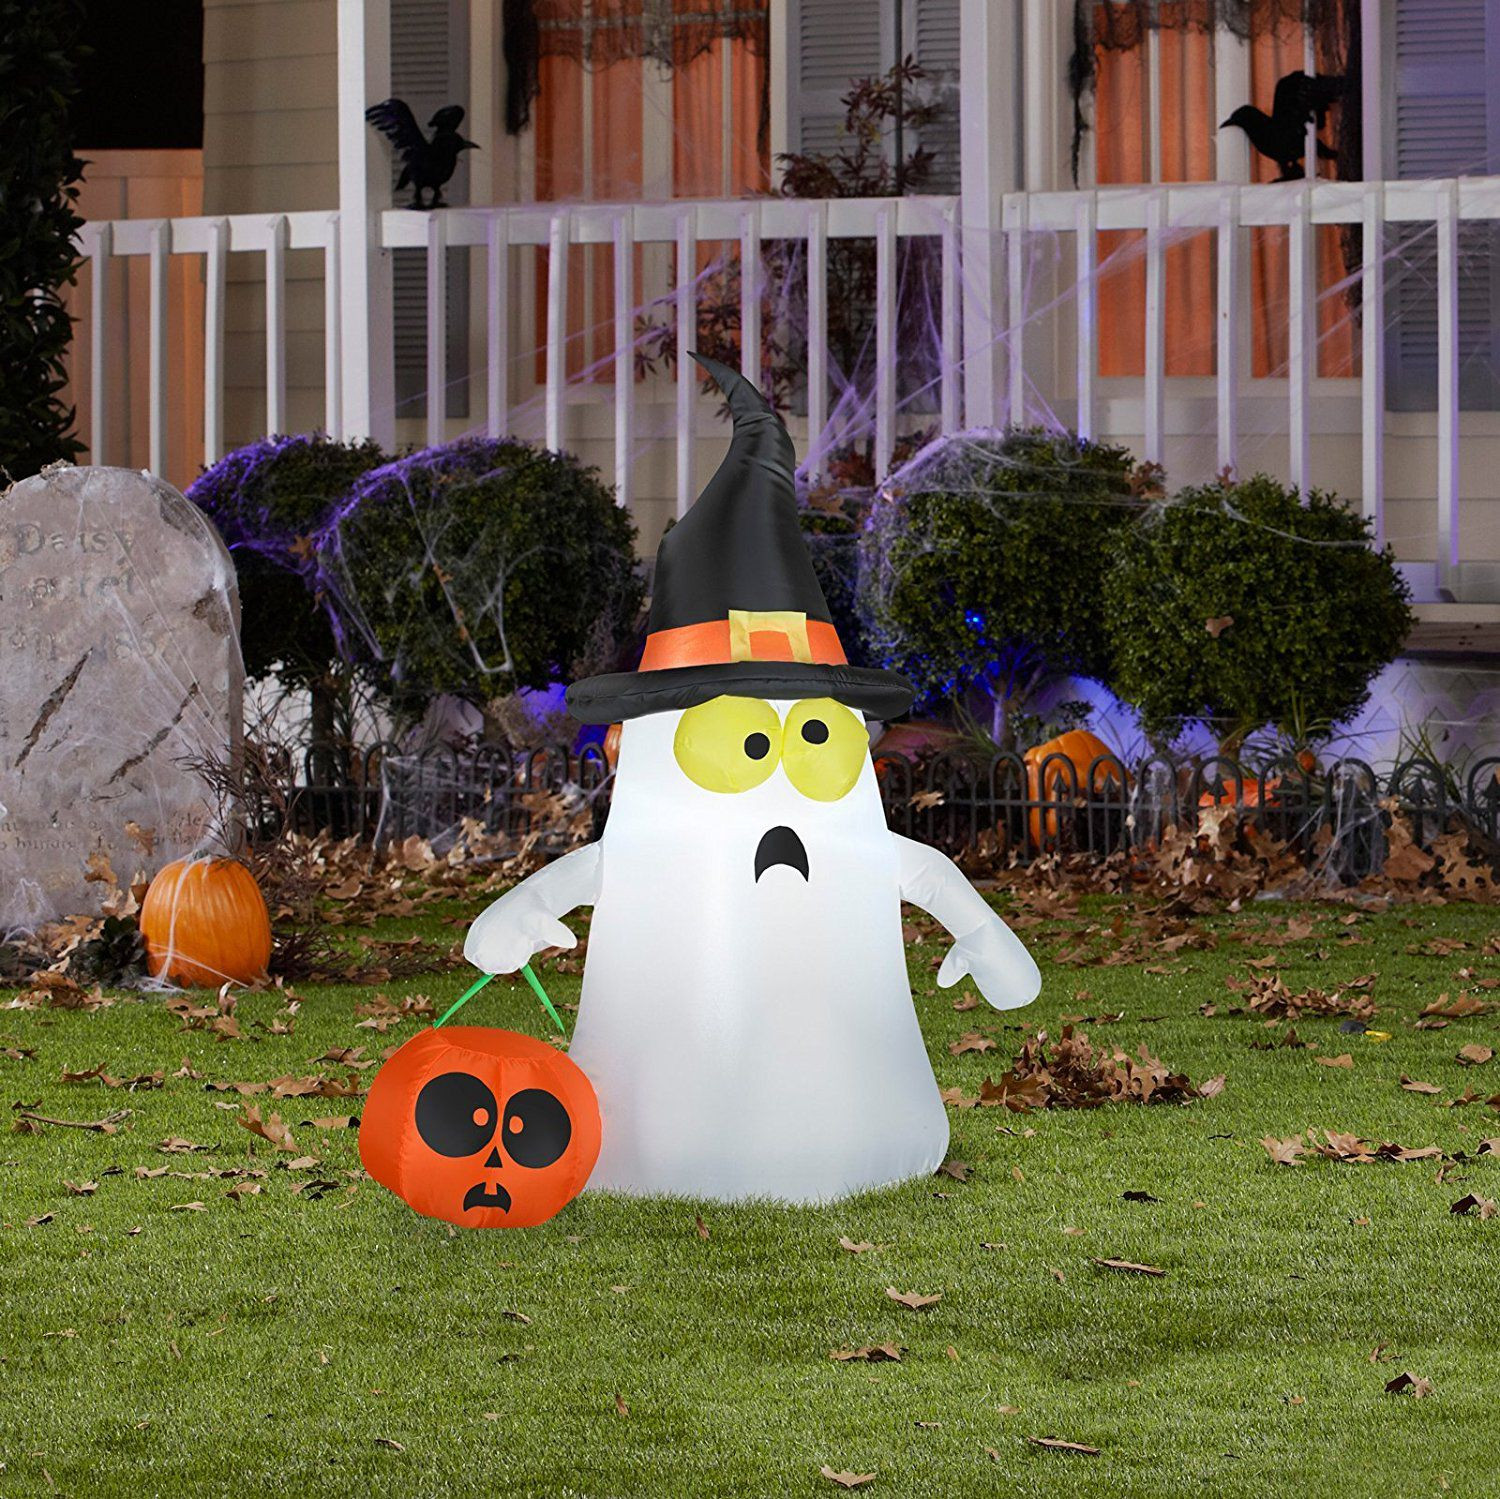 Halloween Outdoor Decor
 The 8 Best Outdoor Halloween Decorations to Buy in 2018